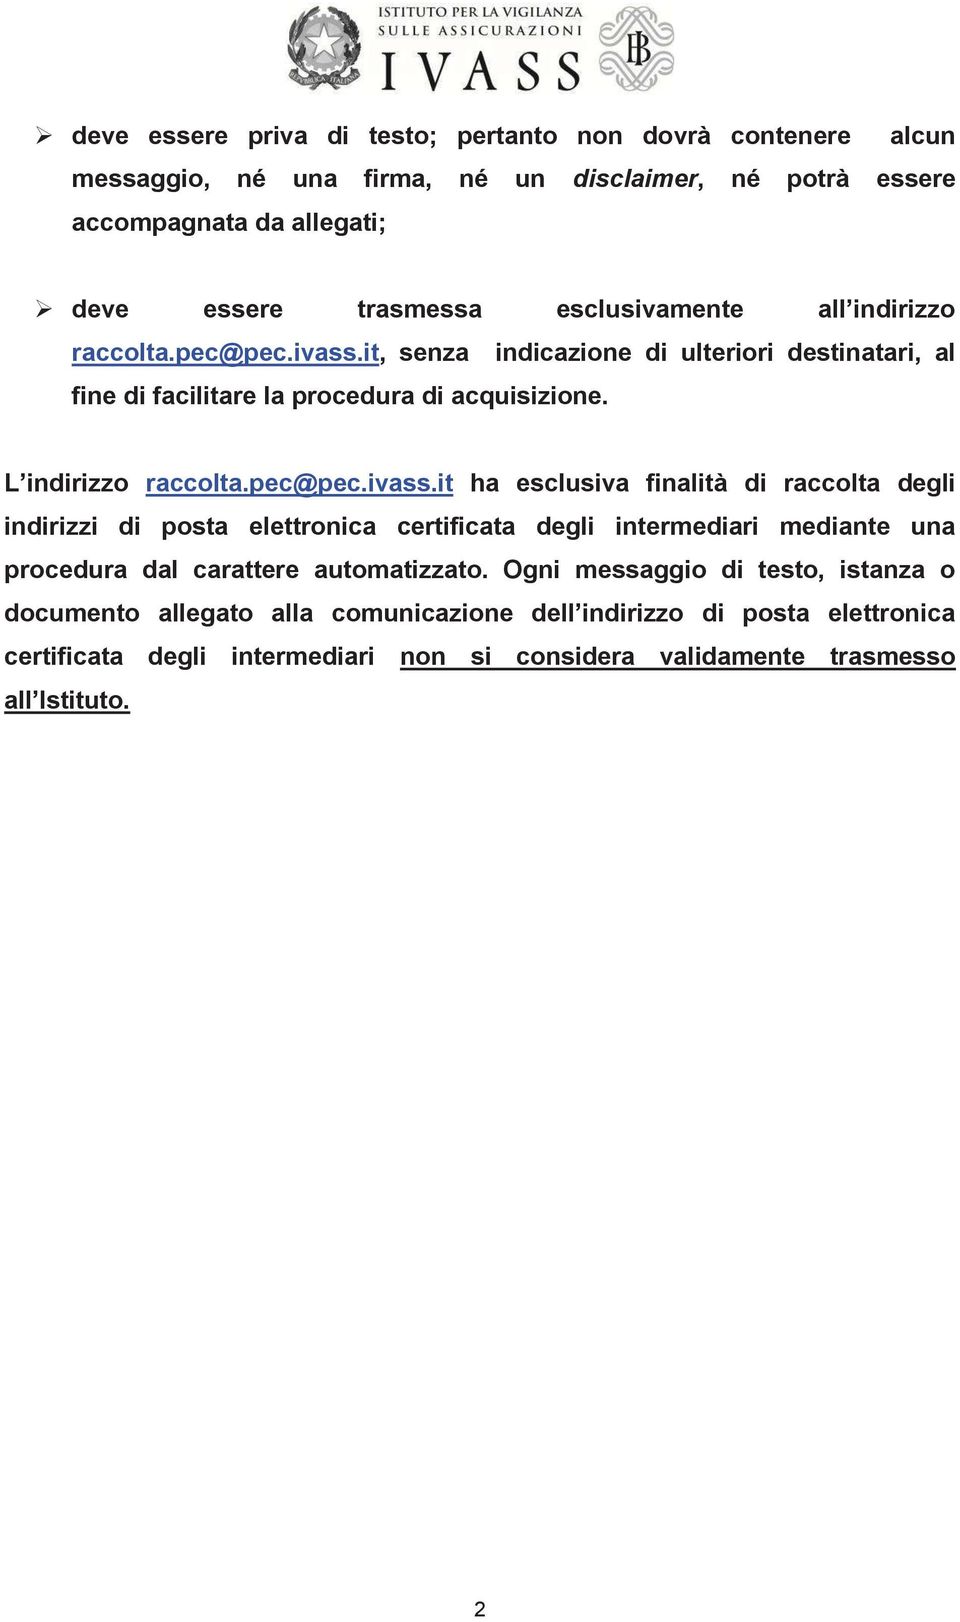 pec@pec.ivass.it ha esclusiva finalità di raccolta degli indirizzi di posta elettronica certificata degli intermediari mediante una procedura dal carattere automatizzato.